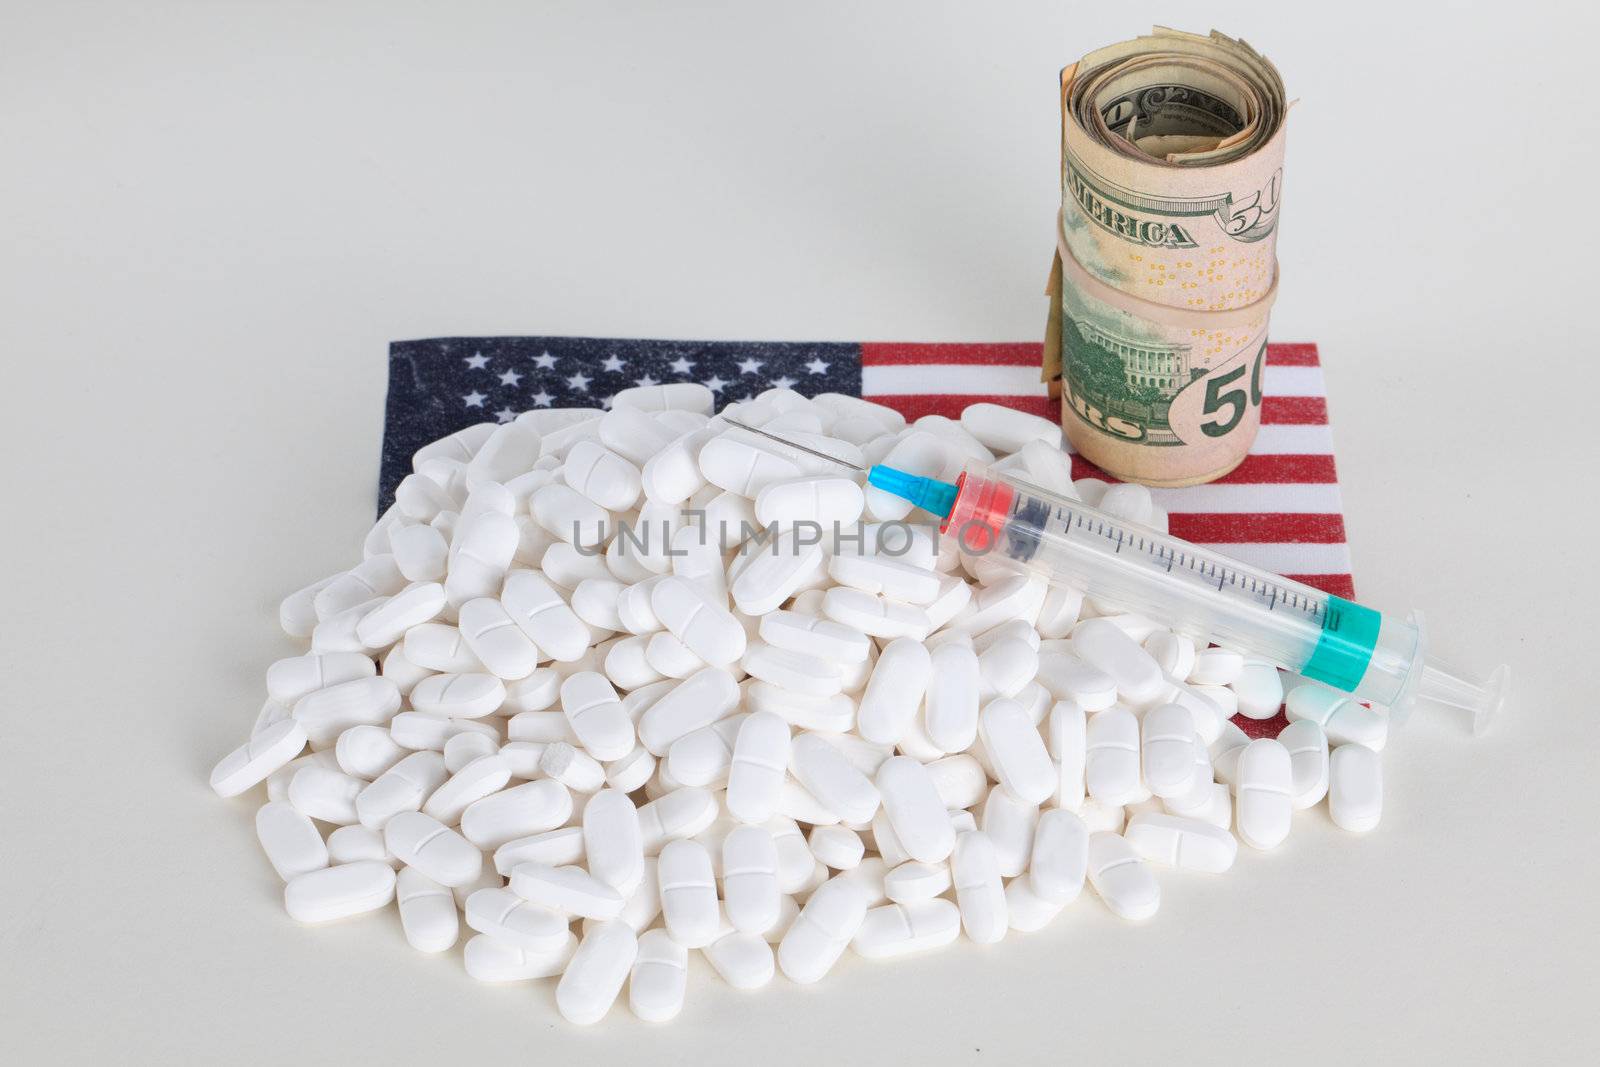 Painkiller, prescription drugs, money